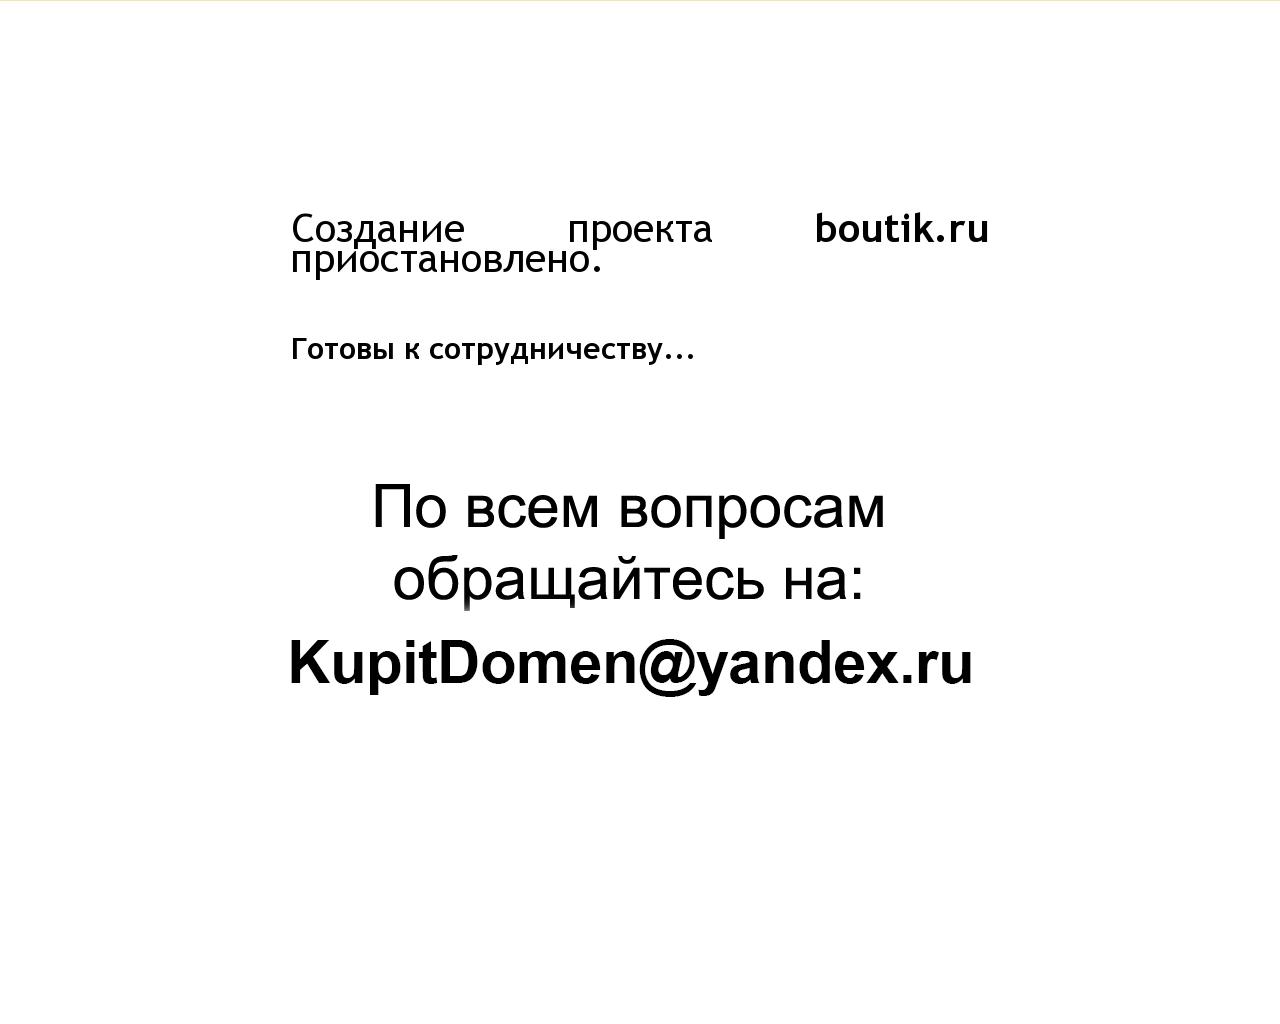 Изображение сайта boutik.ru в разрешении 1280x1024